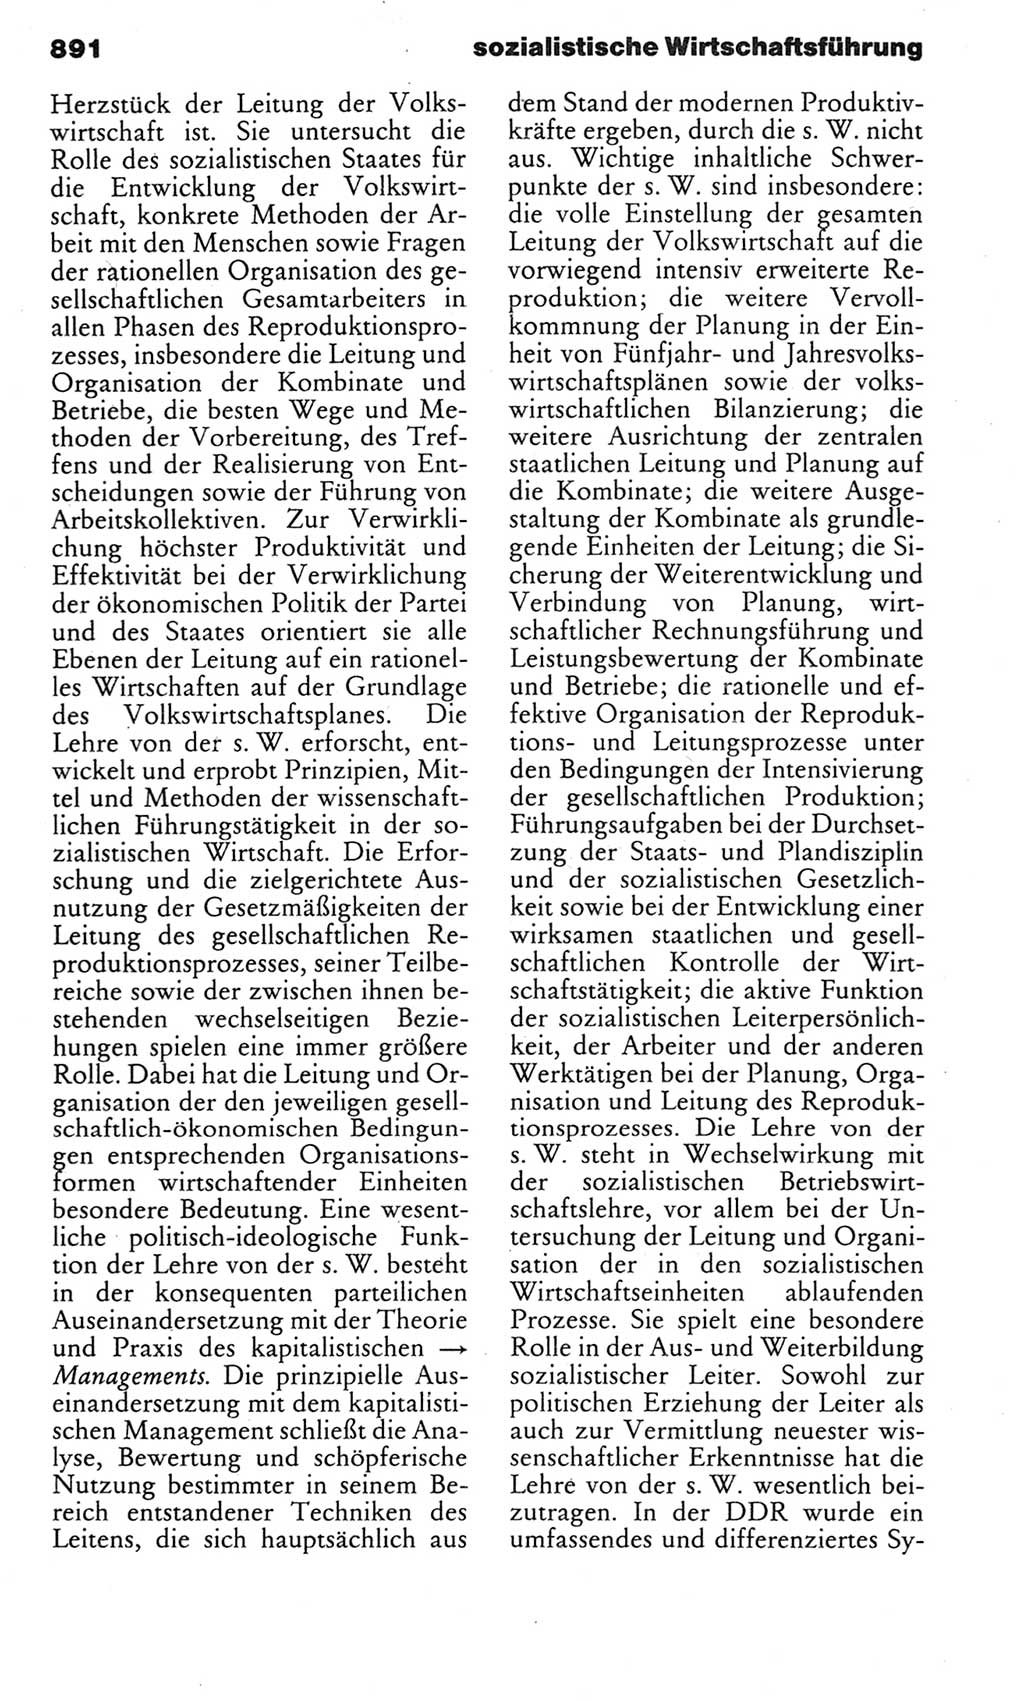 Kleines politisches Wörterbuch [Deutsche Demokratische Republik (DDR)] 1983, Seite 891 (Kl. pol. Wb. DDR 1983, S. 891)